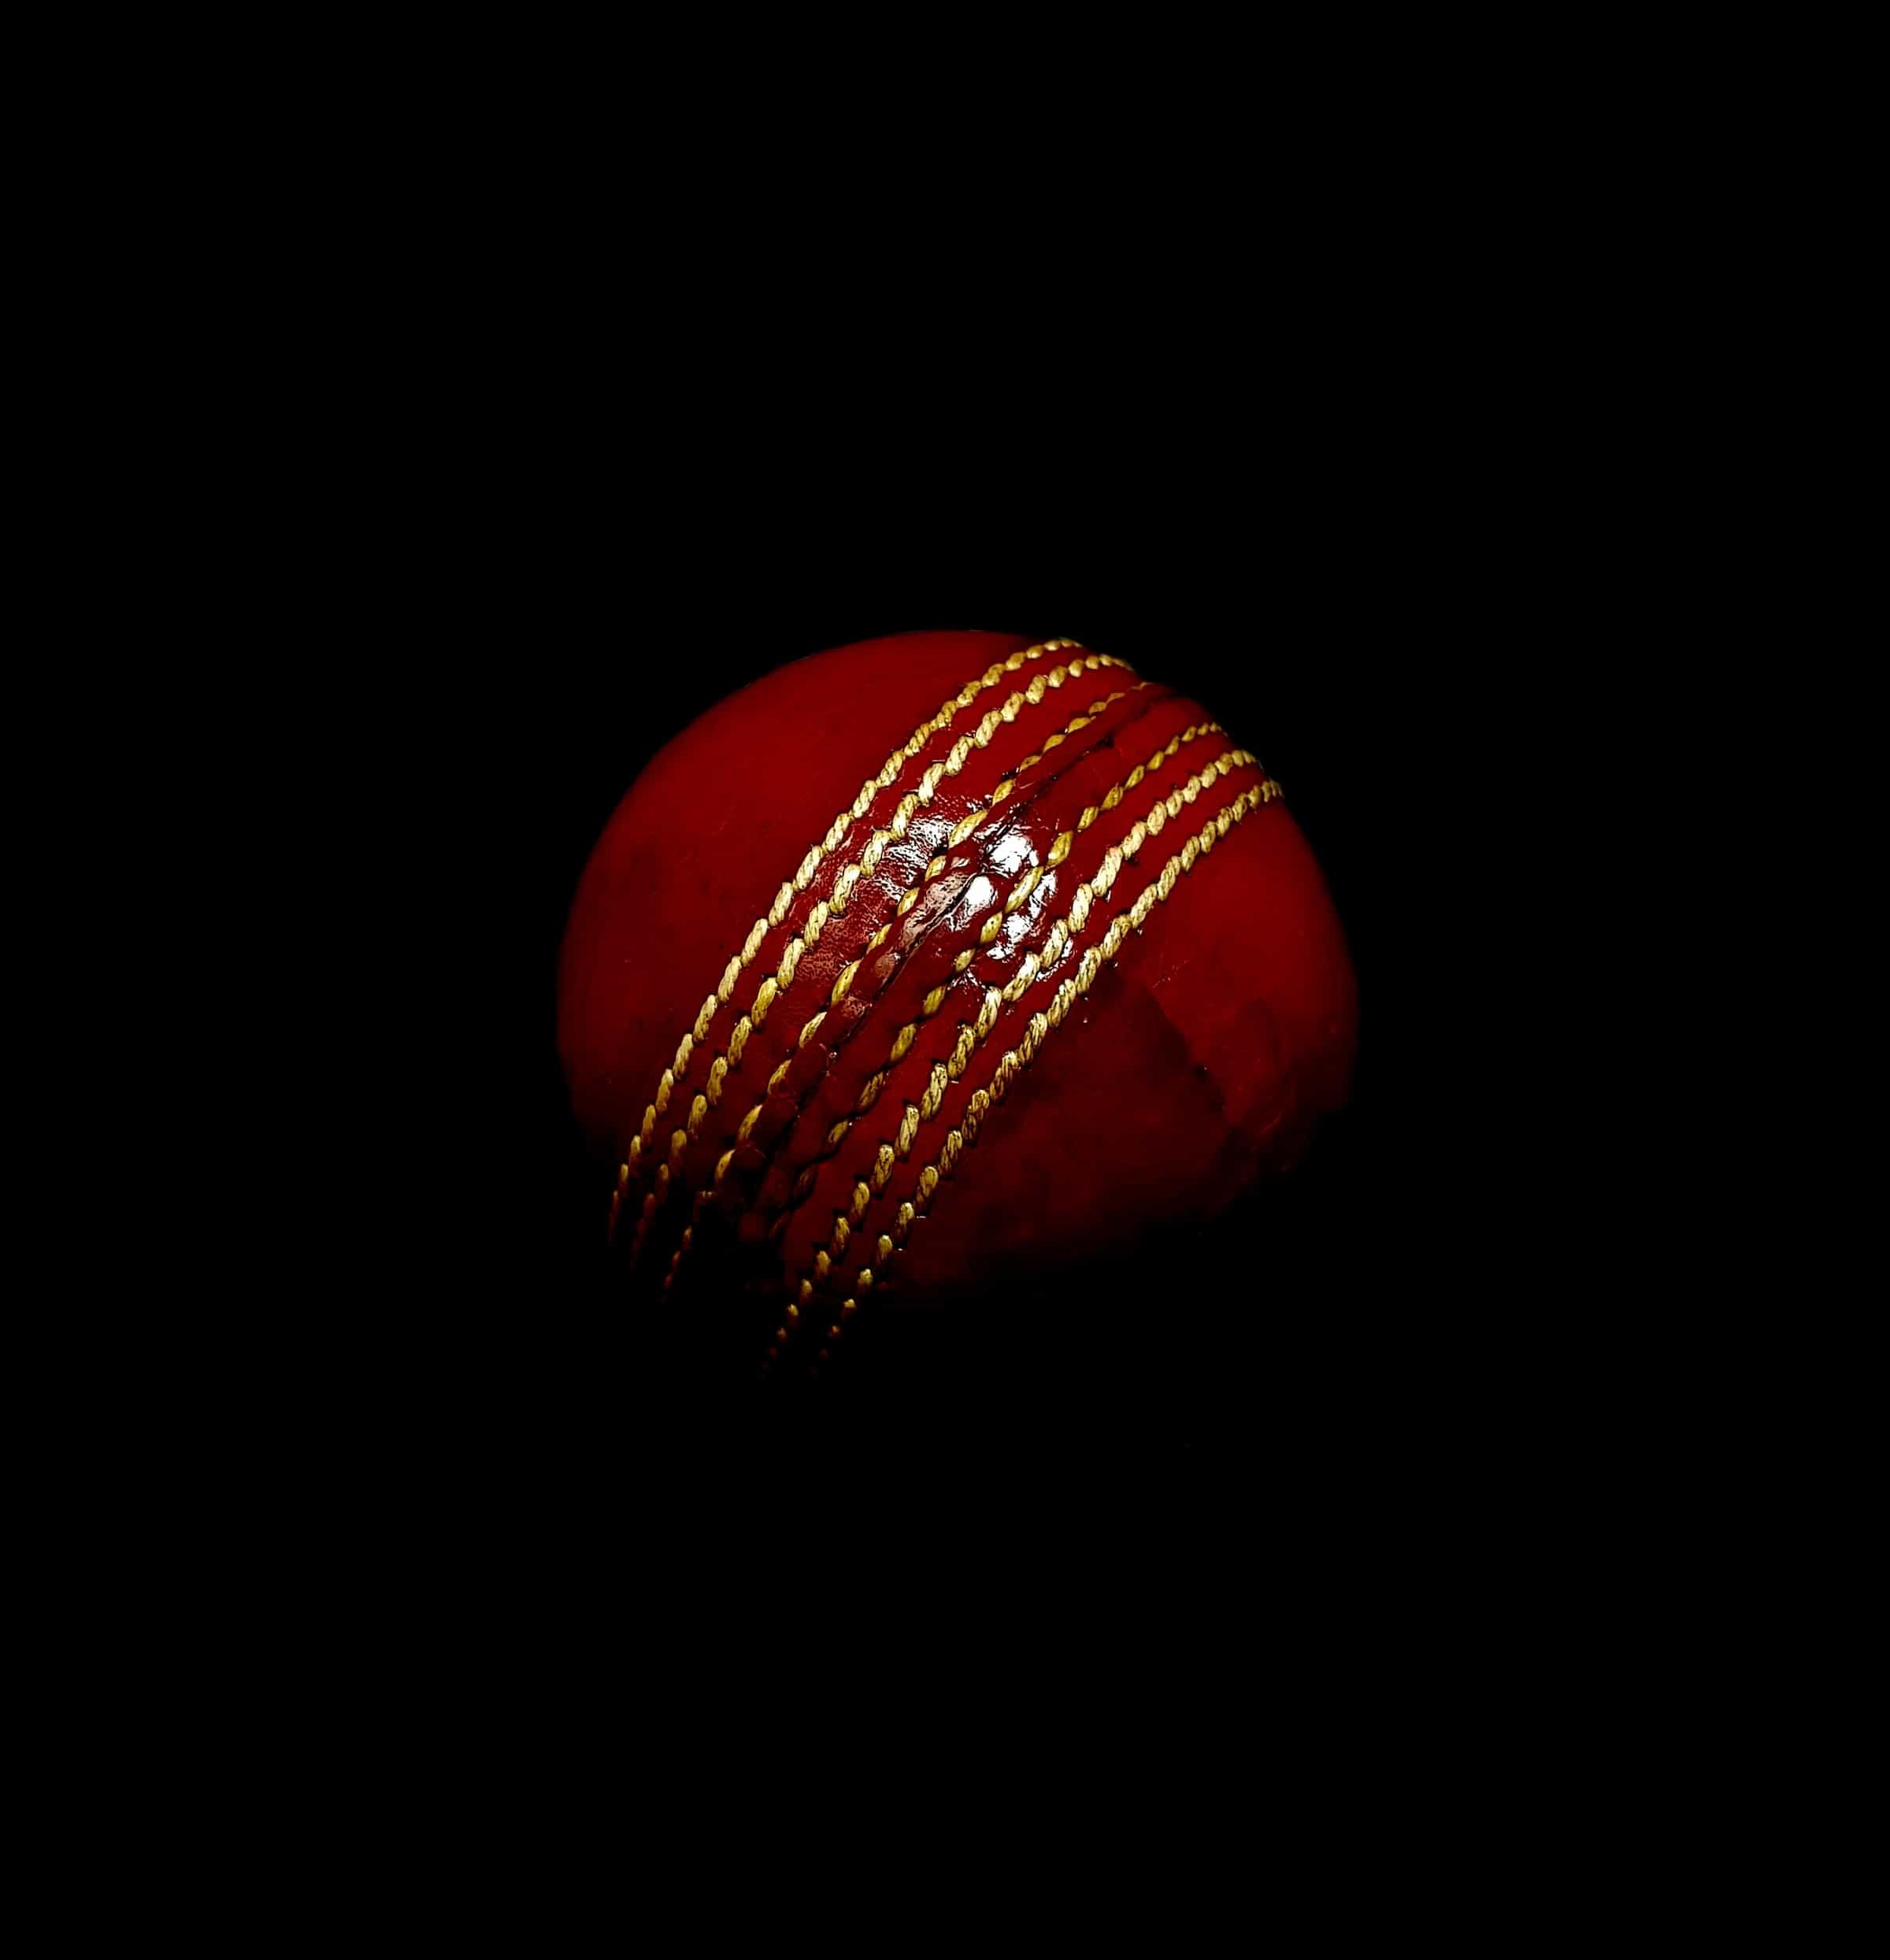 Roter Cricket-Ball auf dunklem Hintergrund